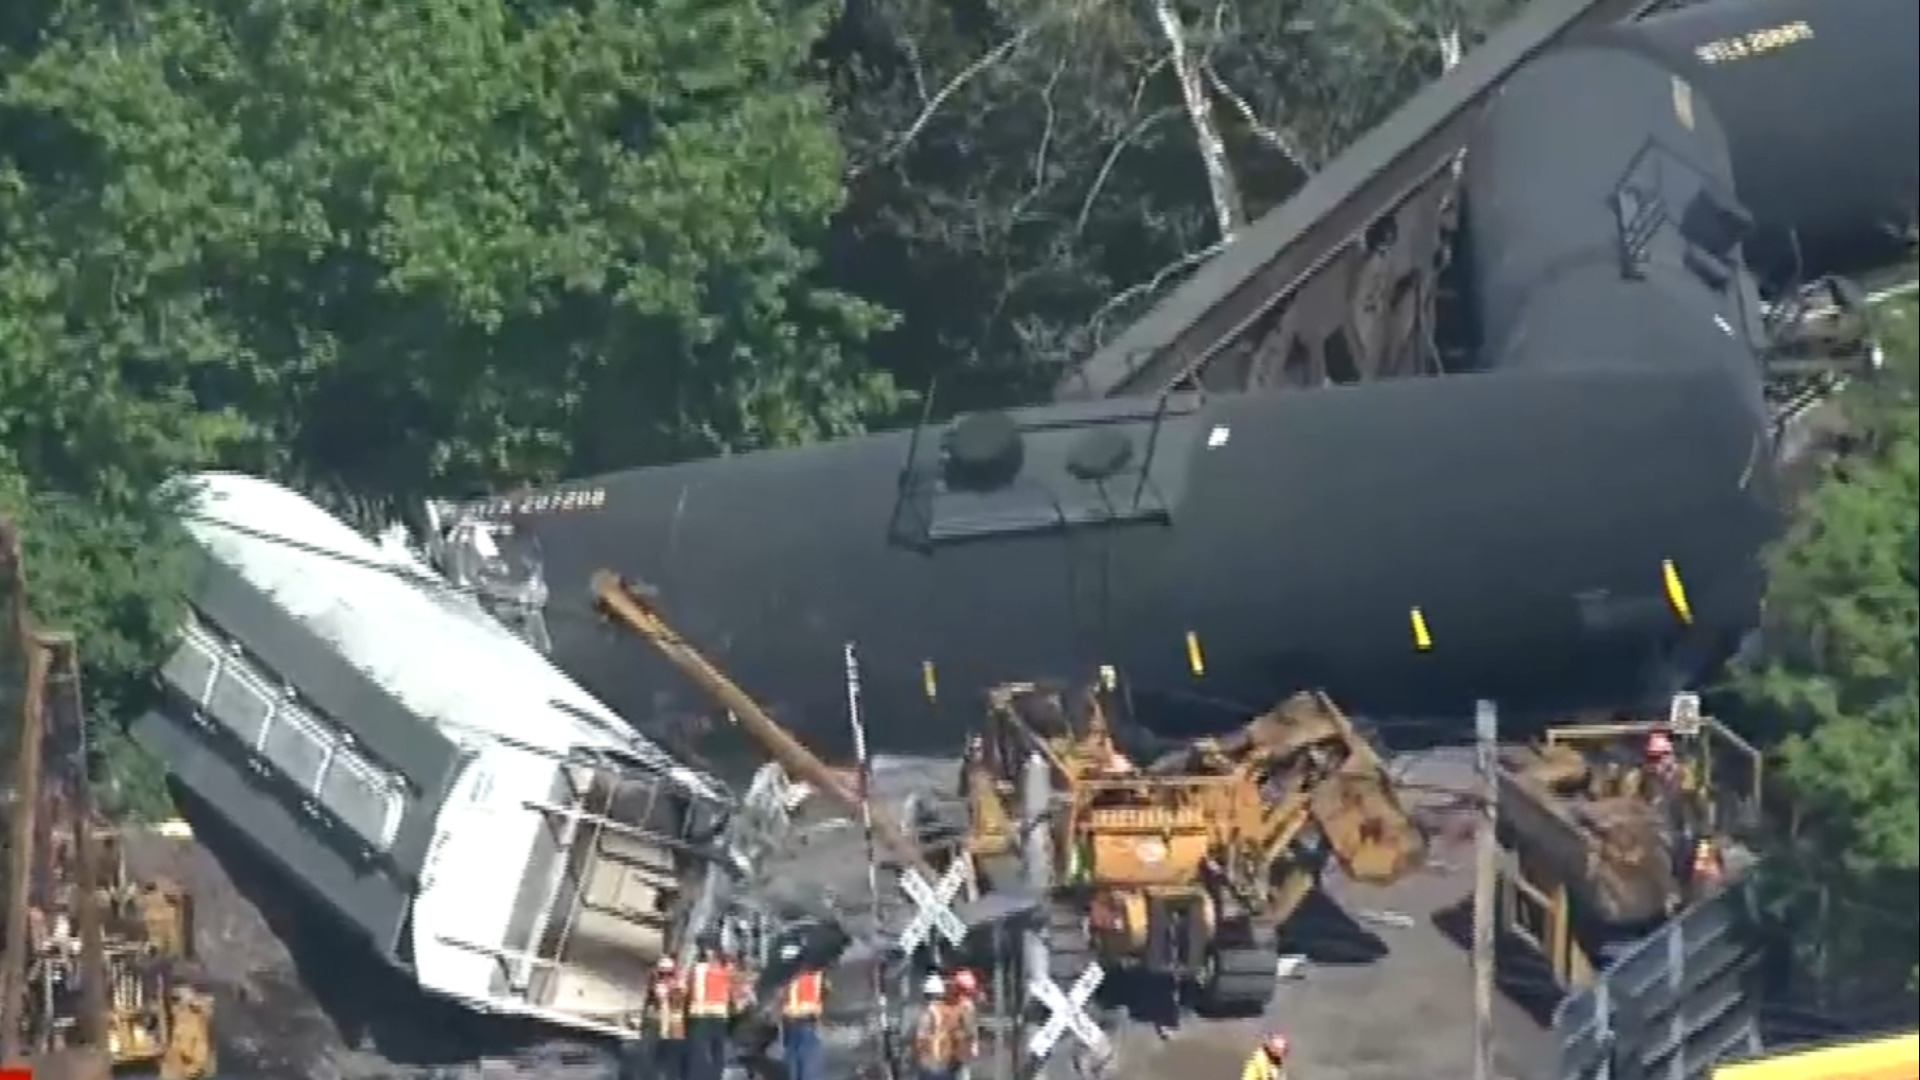 Police responding to train derailment south of Coolidge | 12news.com